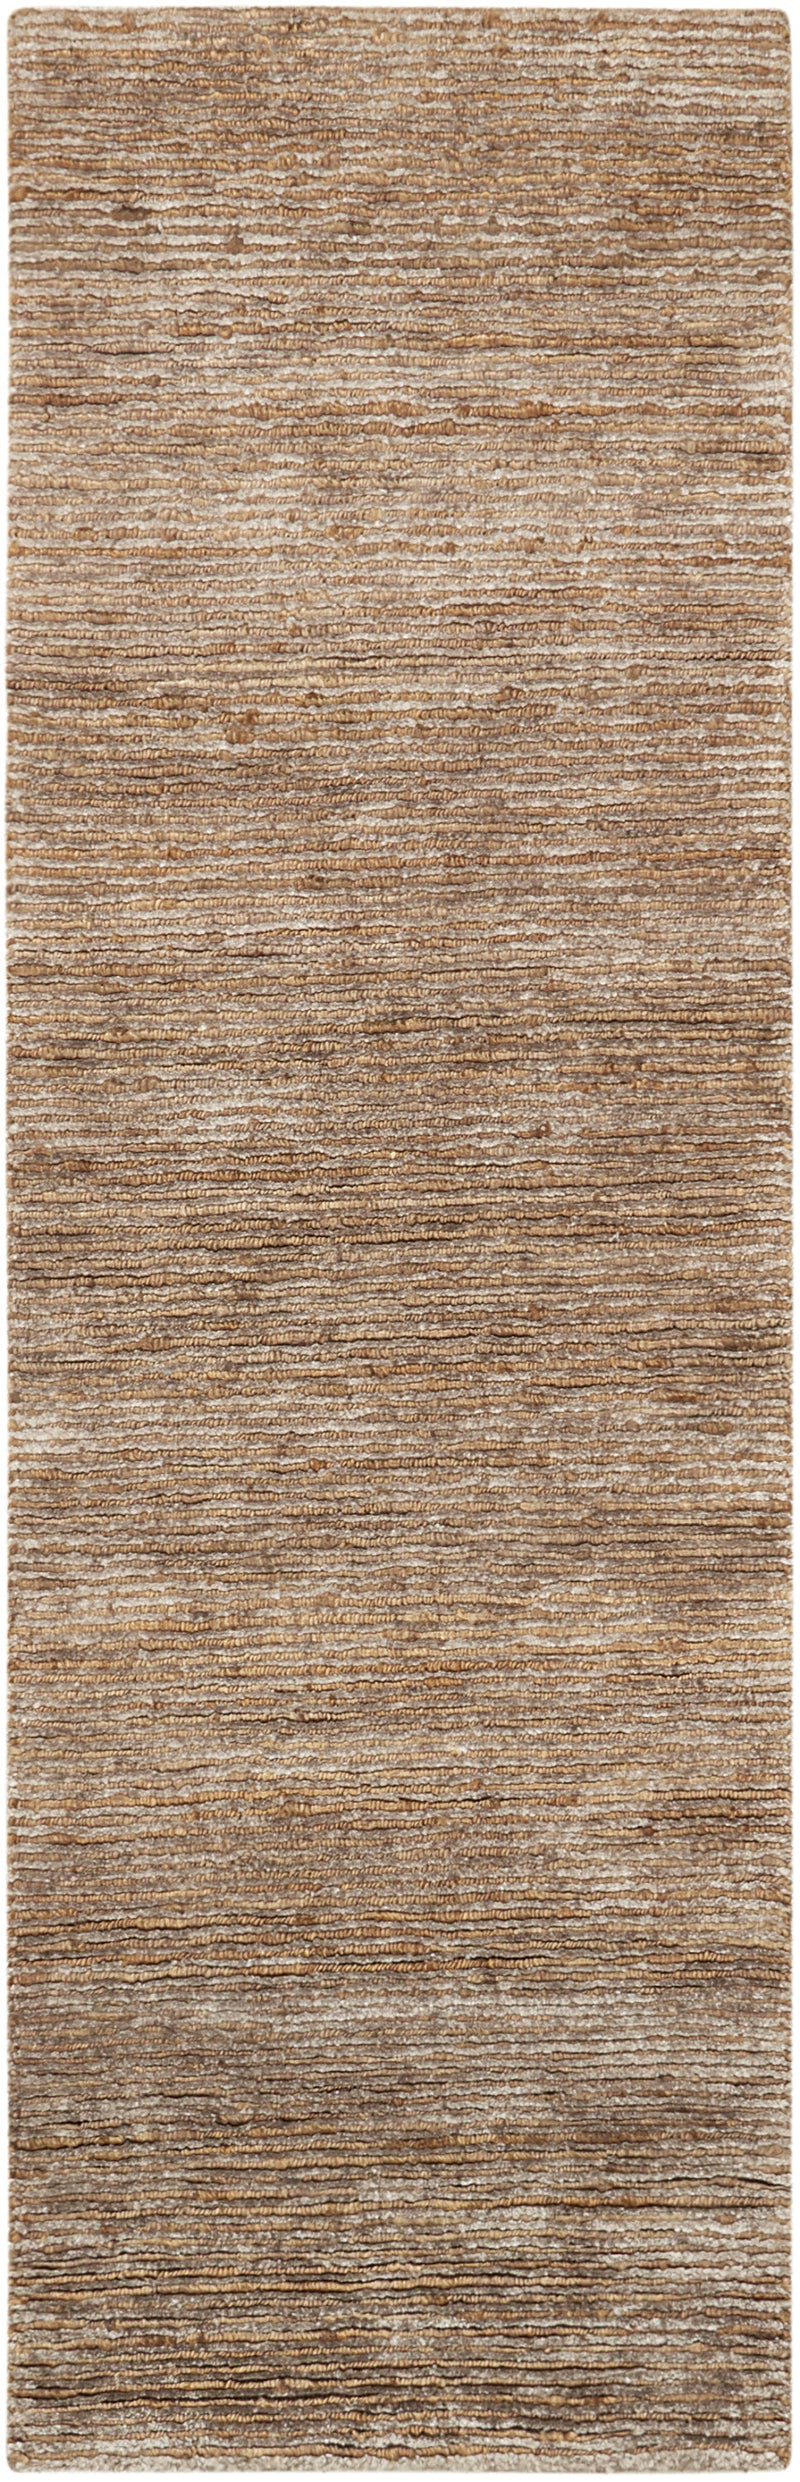 media image for mesa handmade amber rug by nourison 99446244871 redo 2 259